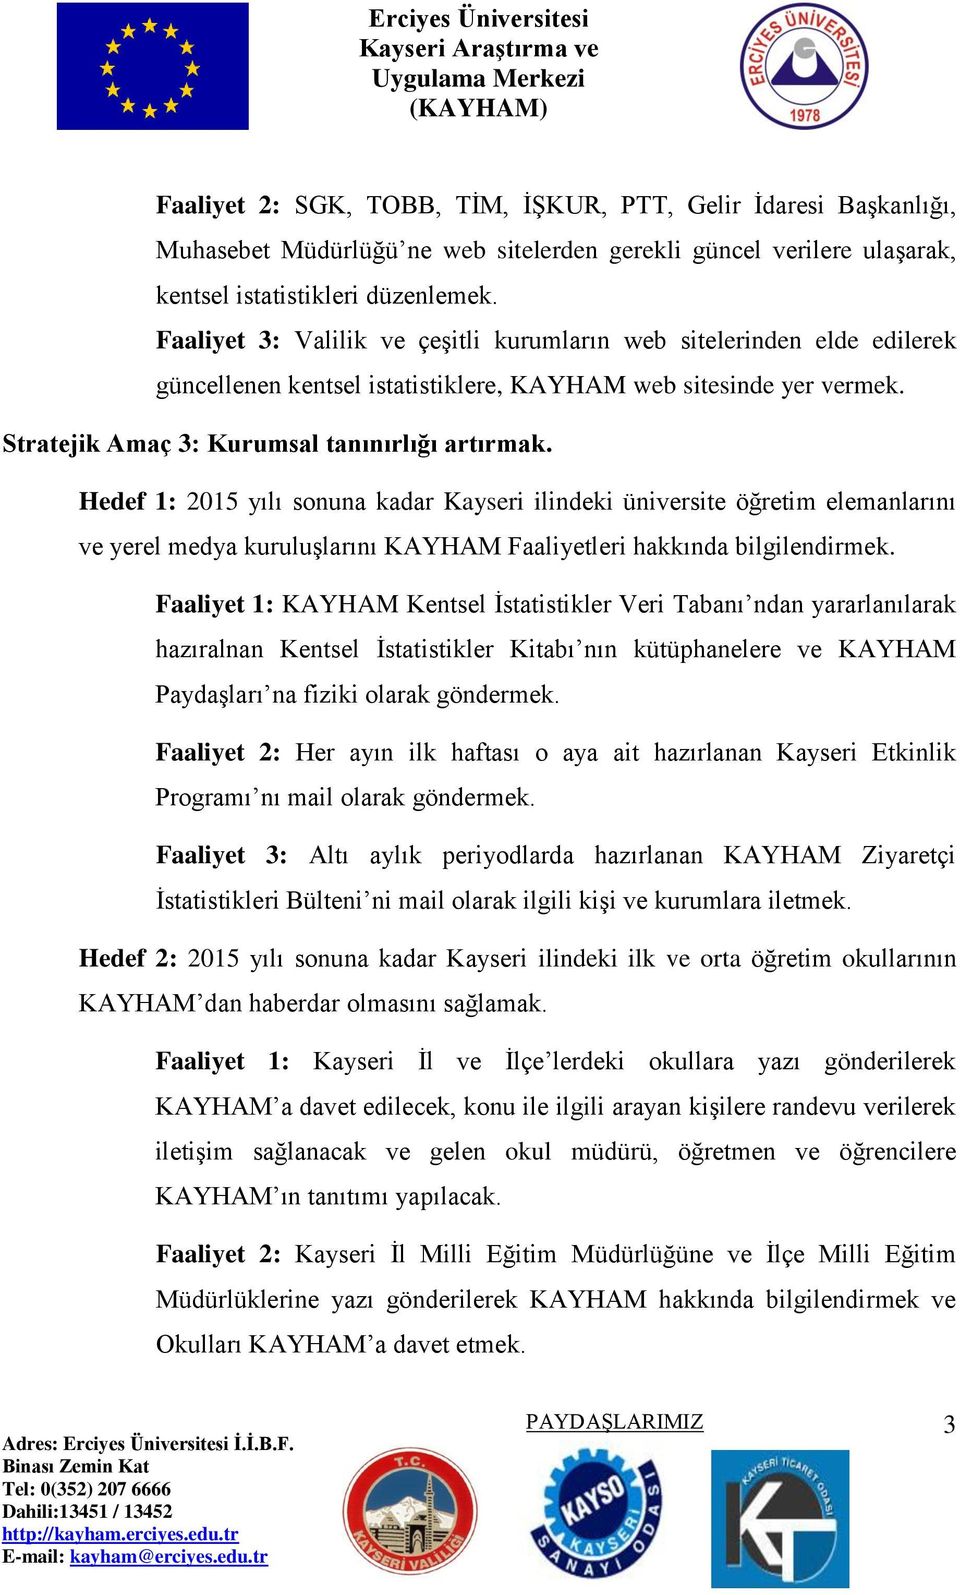 Hedef 1: 2015 yılı sonuna kadar Kayseri ilindeki üniversite öğretim elemanlarını ve yerel medya kuruluşlarını KAYHAM Faaliyetleri hakkında bilgilendirmek.